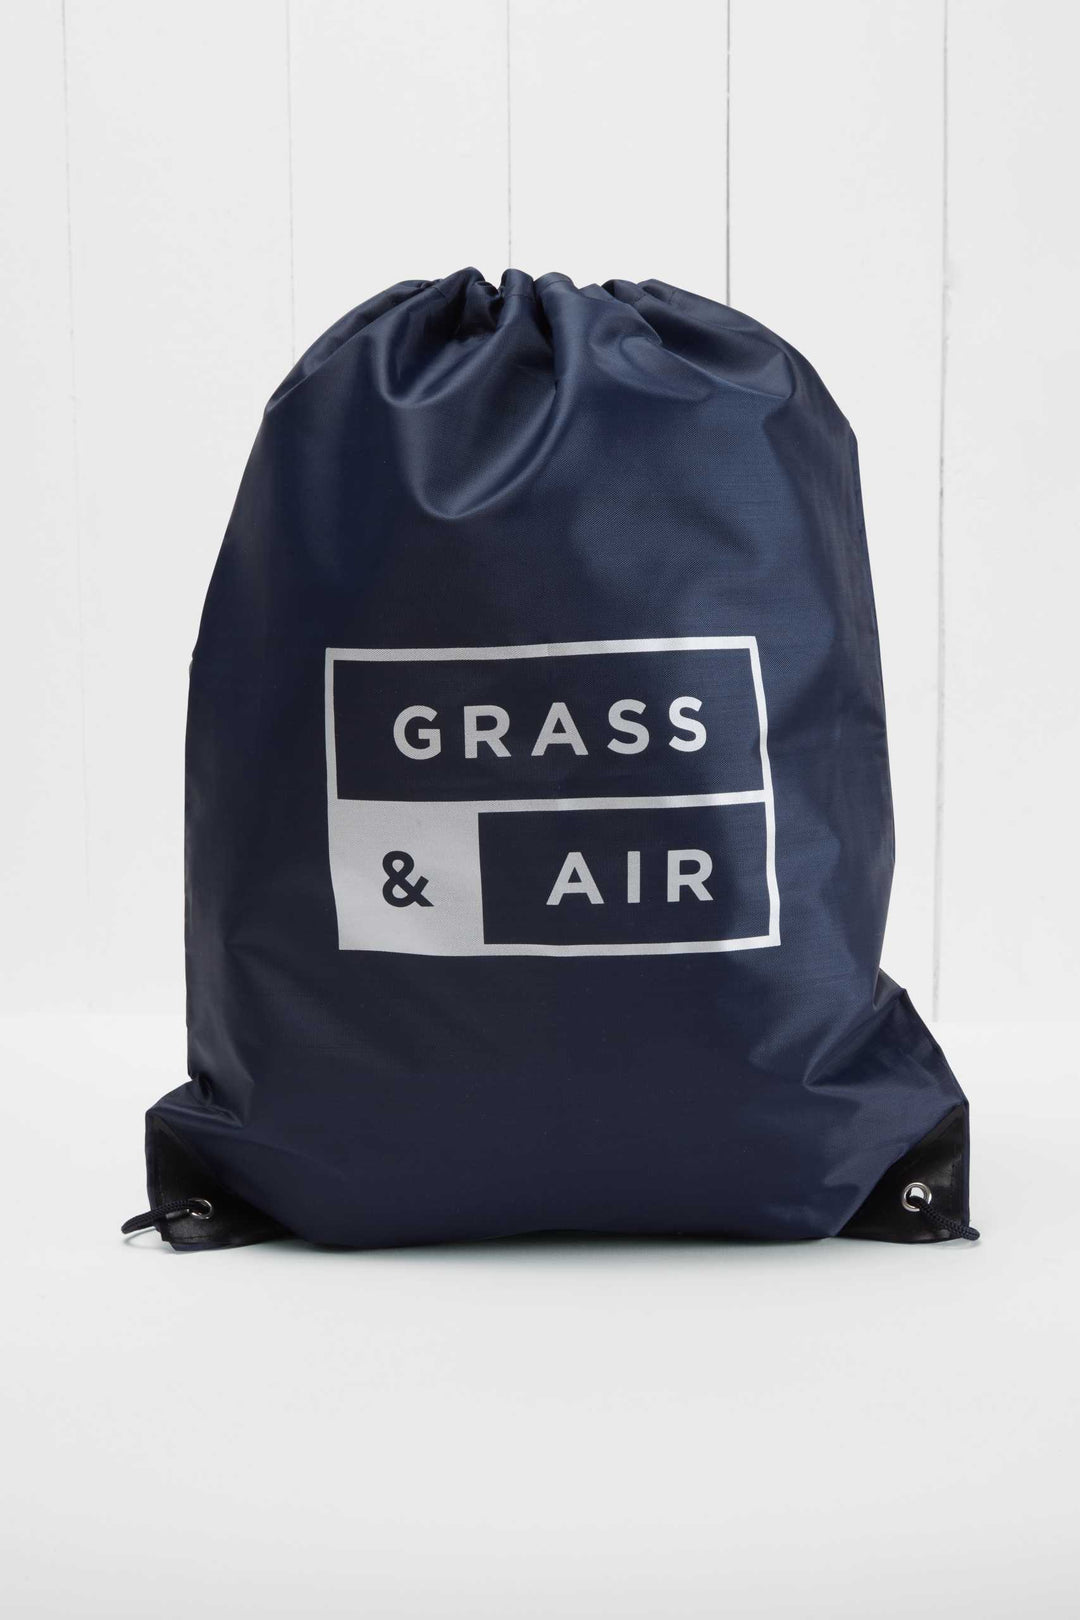 Grass & Air - Colour-Changing Cloud Wellies - Ochre